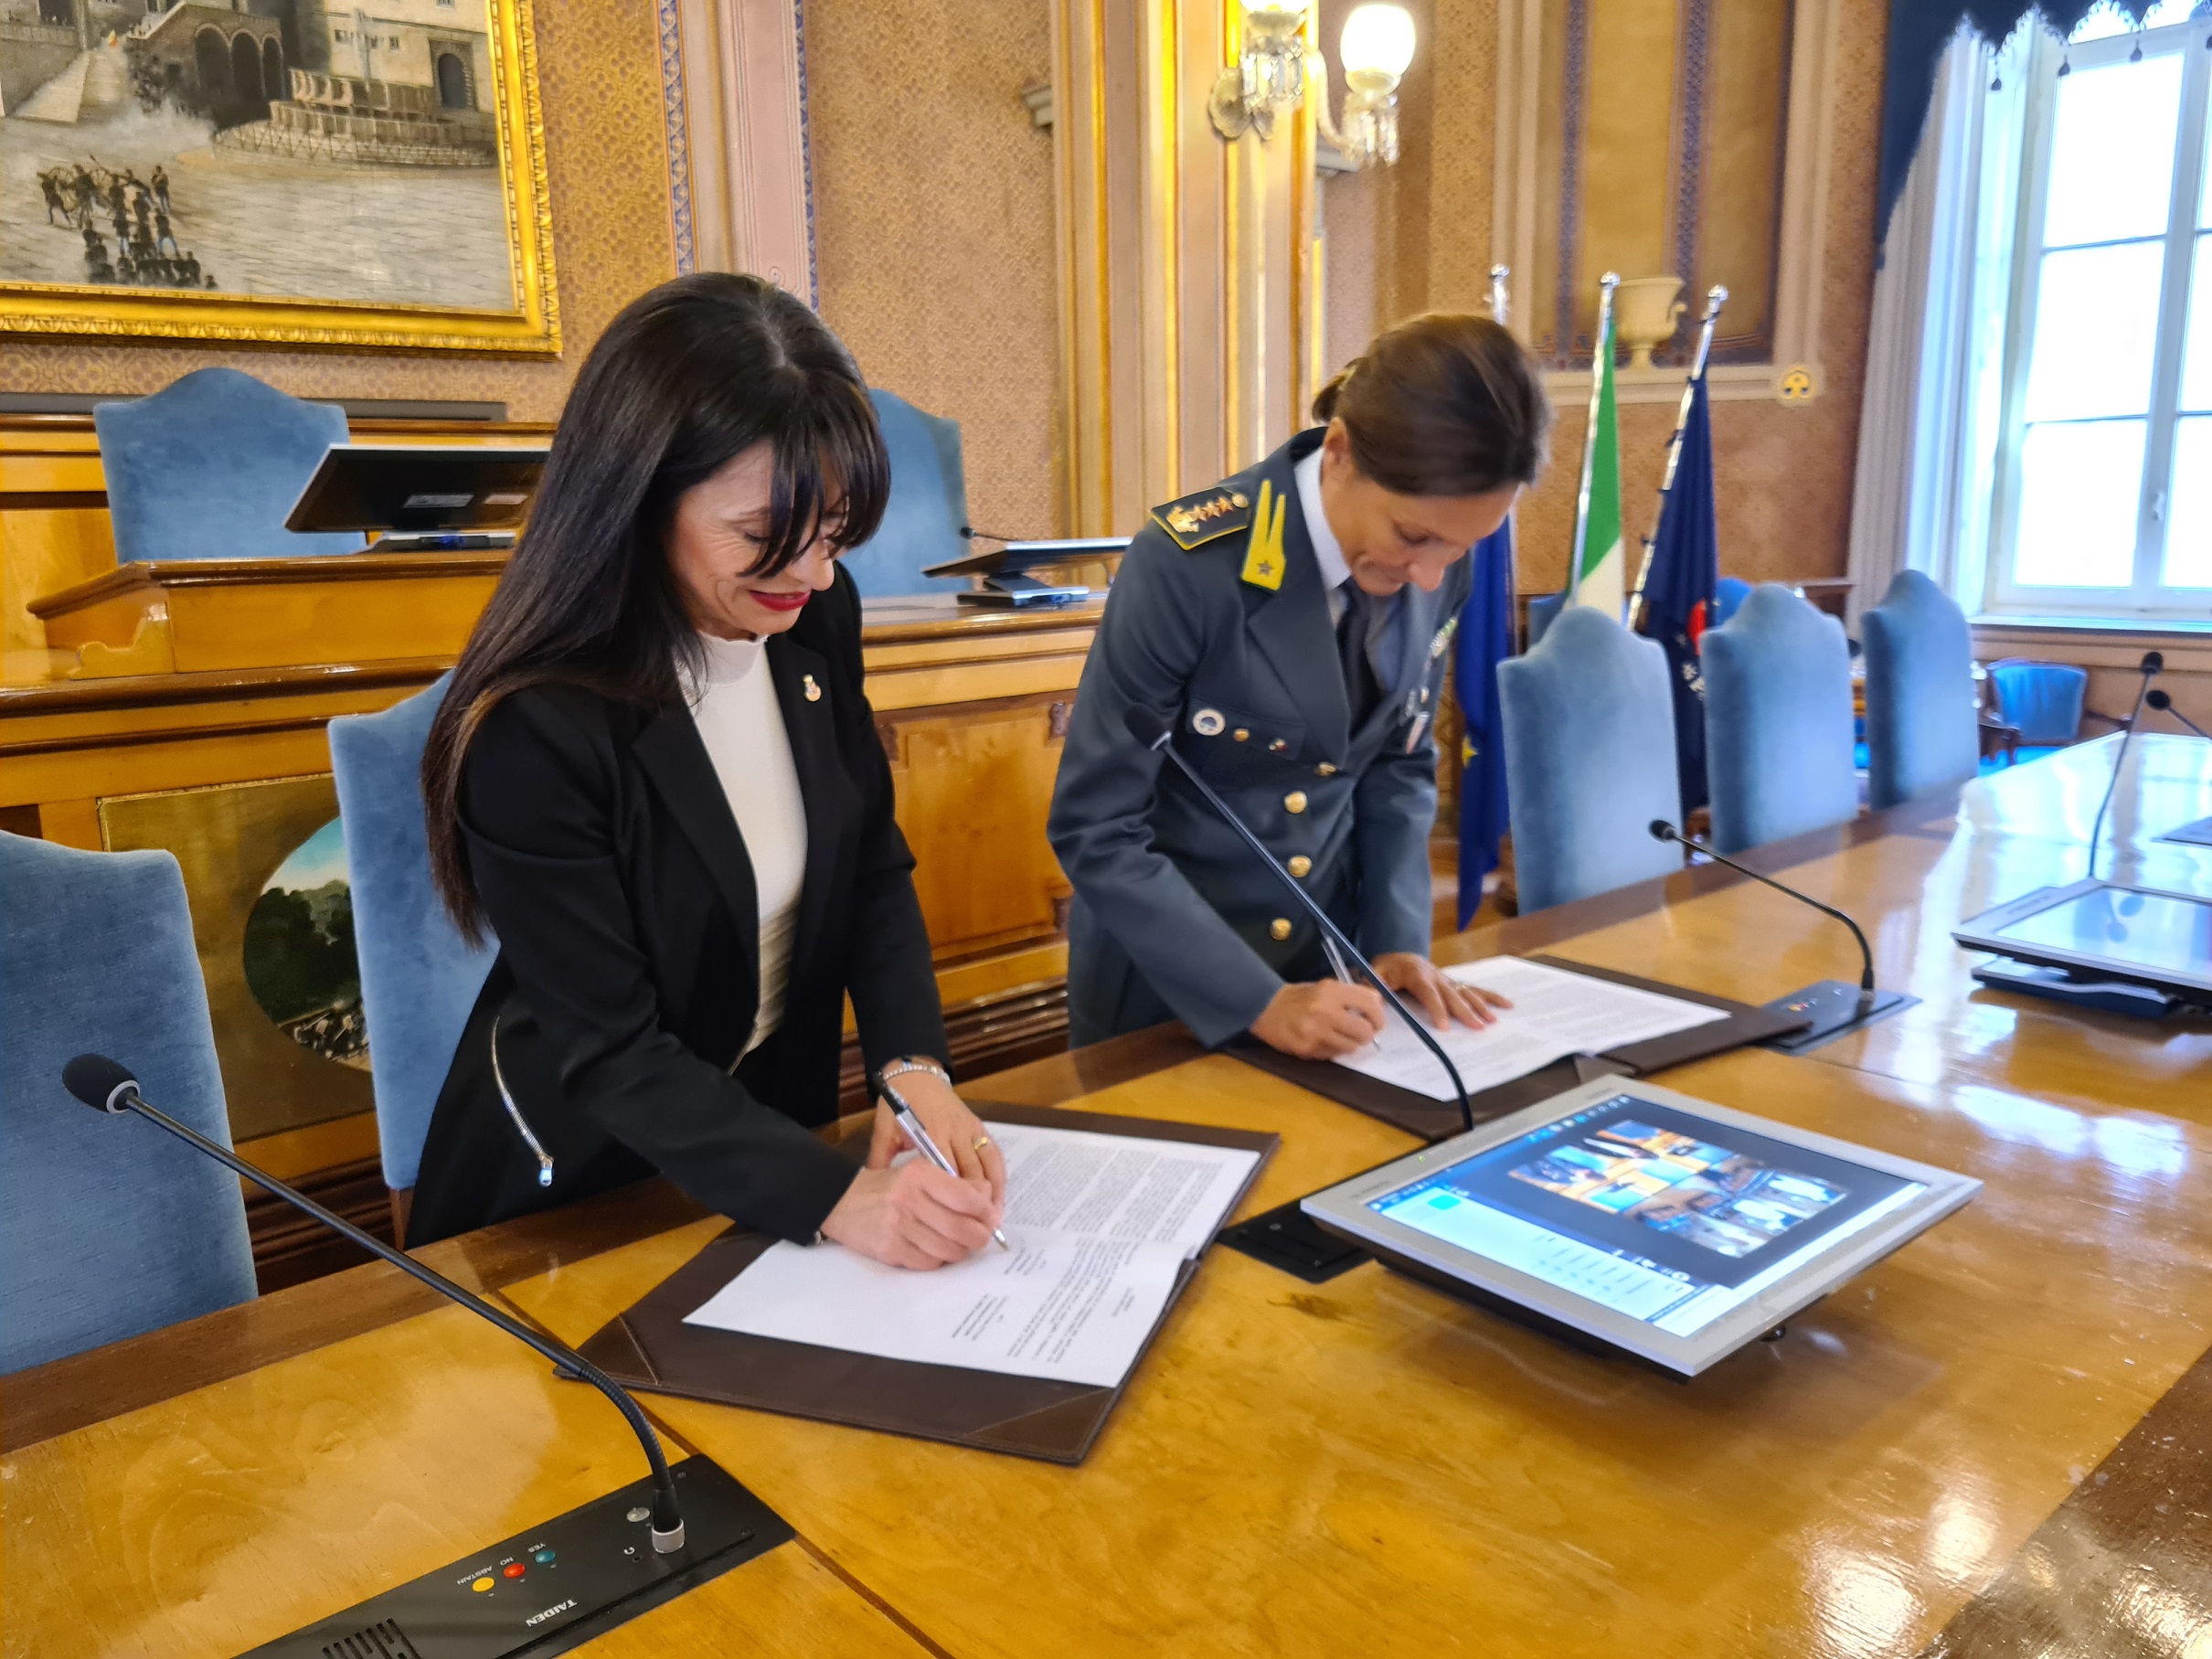 Pnrr e legalità - Protocollo d’intesa tra la Provincia di Perugia e il Comando provinciale della Guardia di Finanza